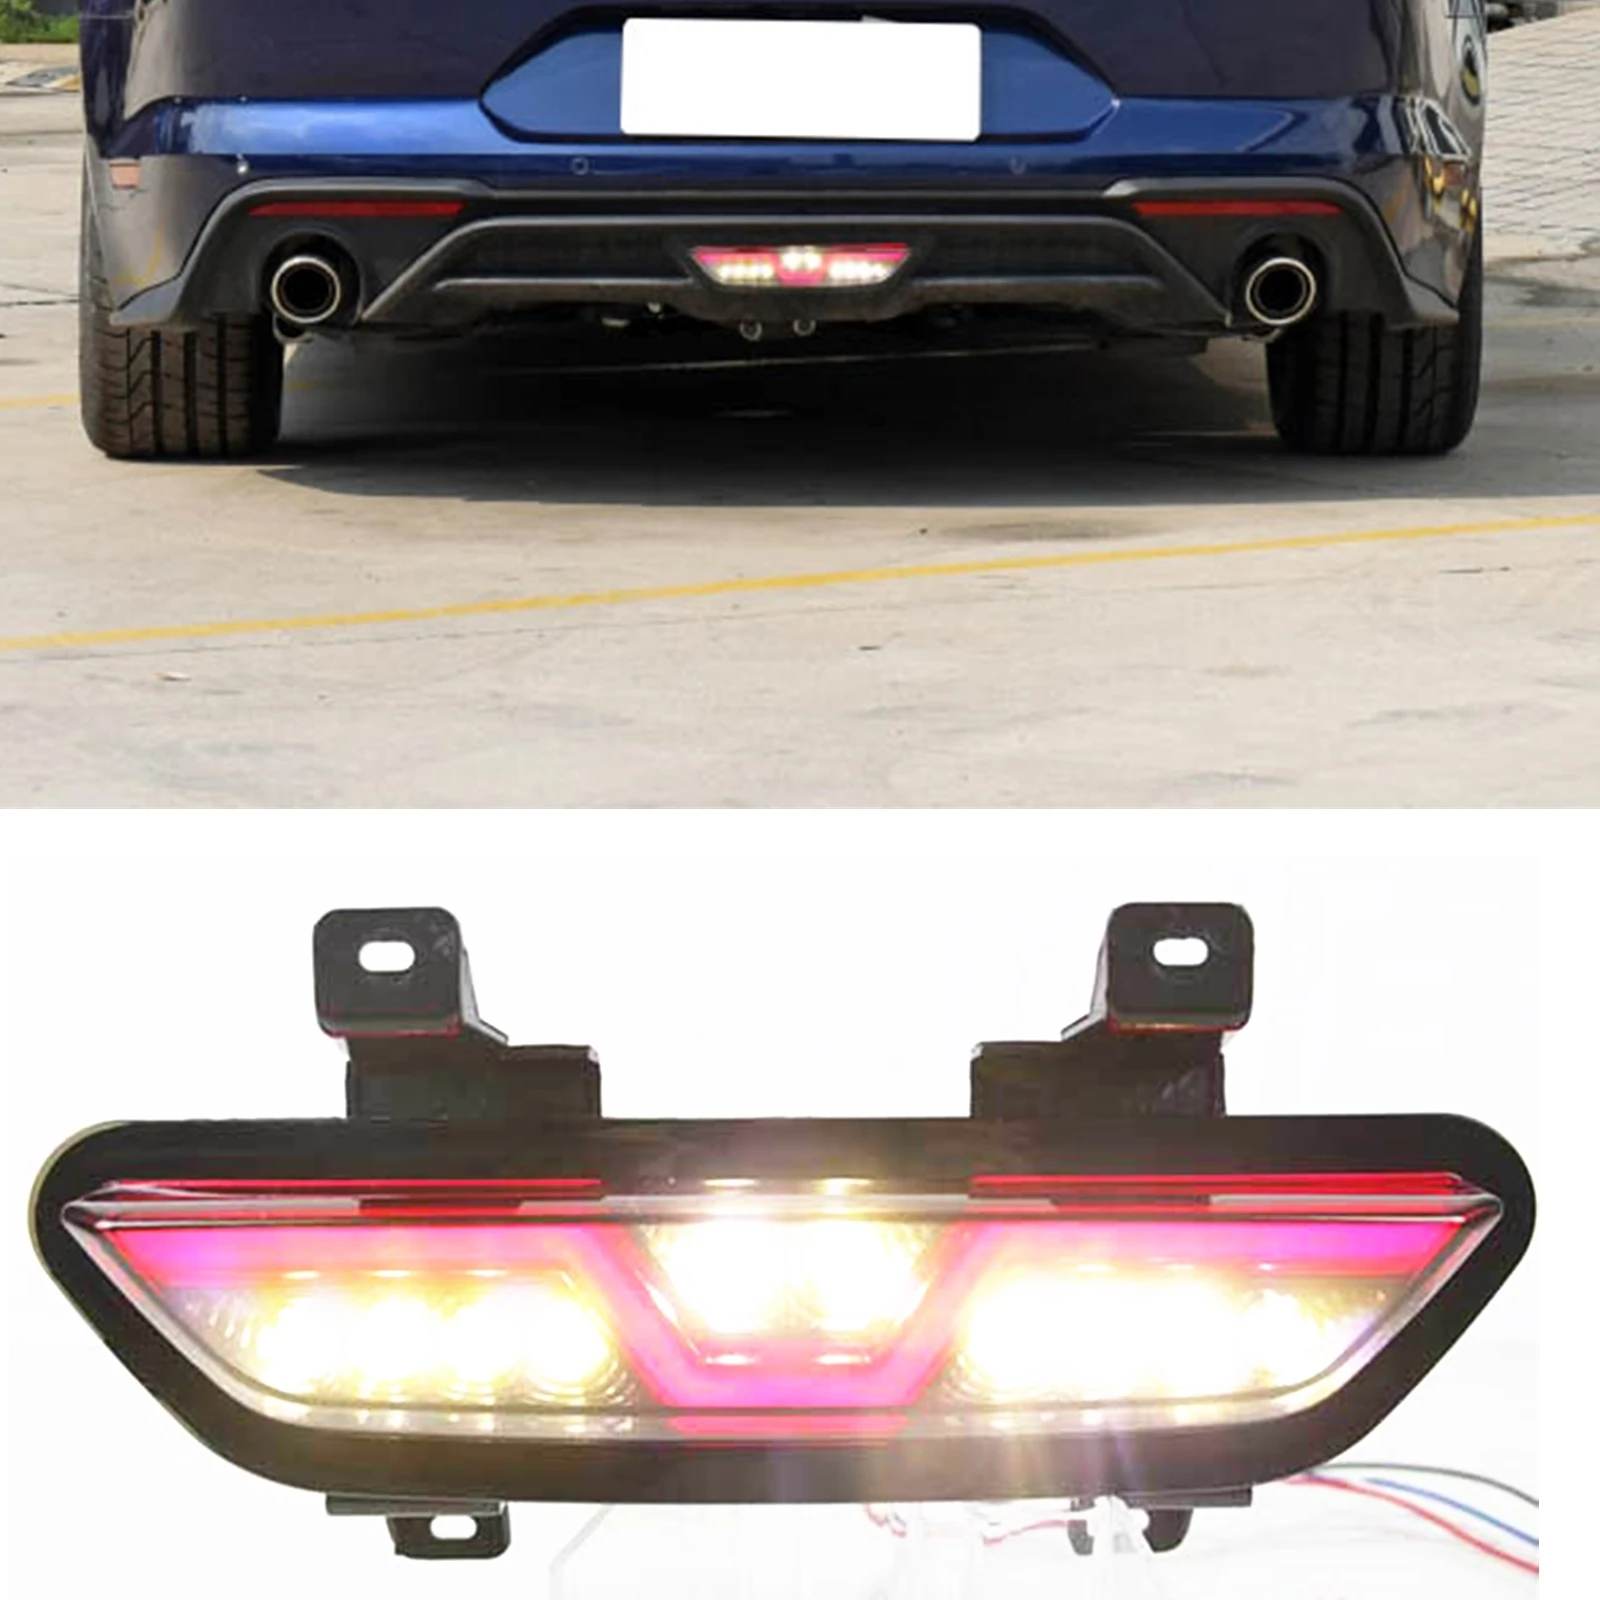 

Отражатель для заднего бампера, задний фонарь для Ford Mustang 2015-2018